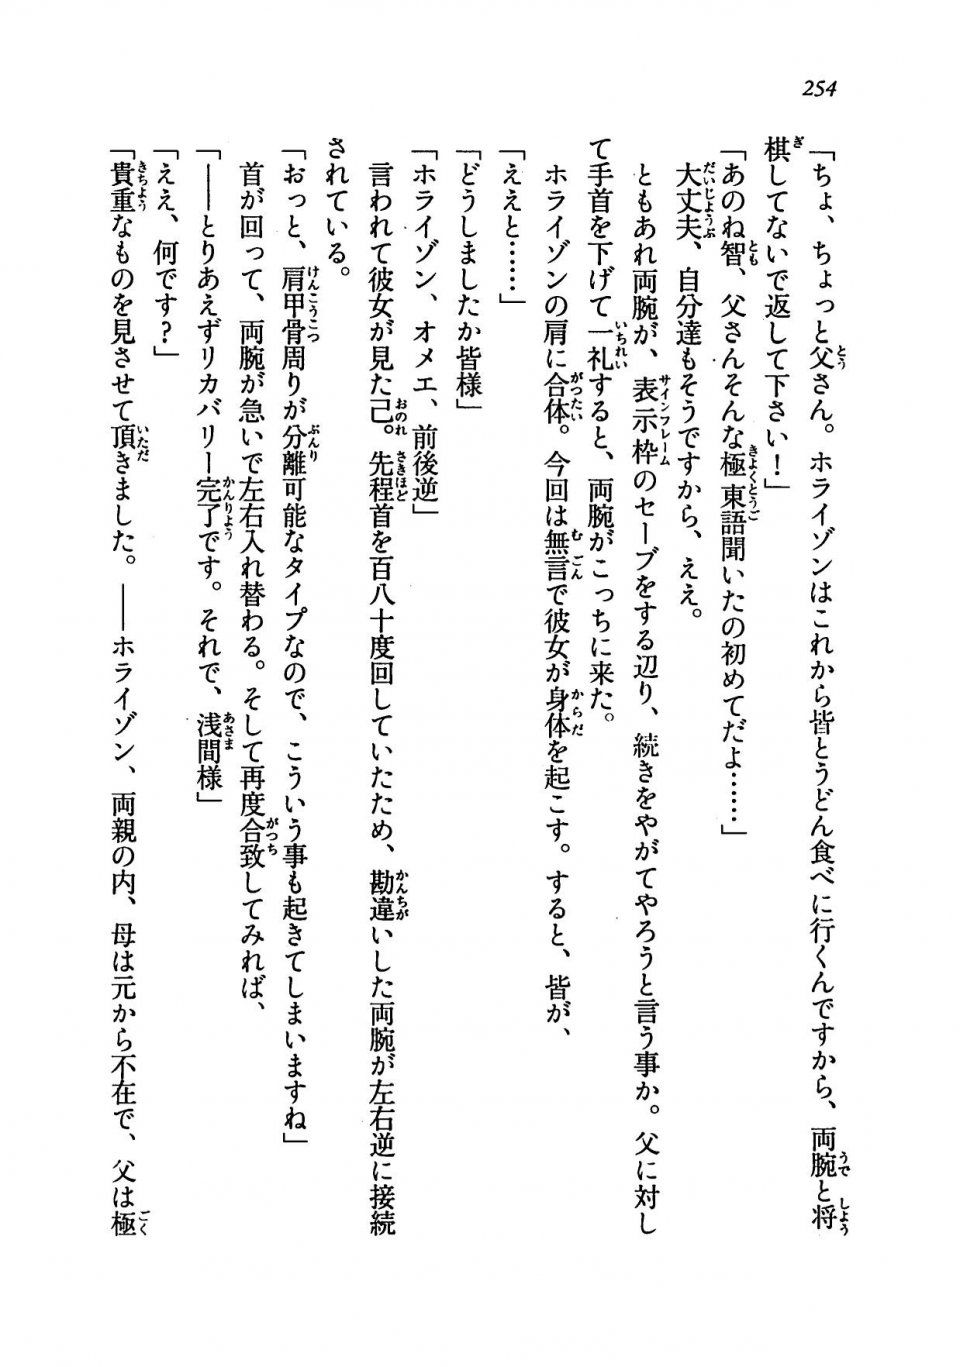 Kyoukai Senjou no Horizon LN Vol 19(8A) - Photo #254